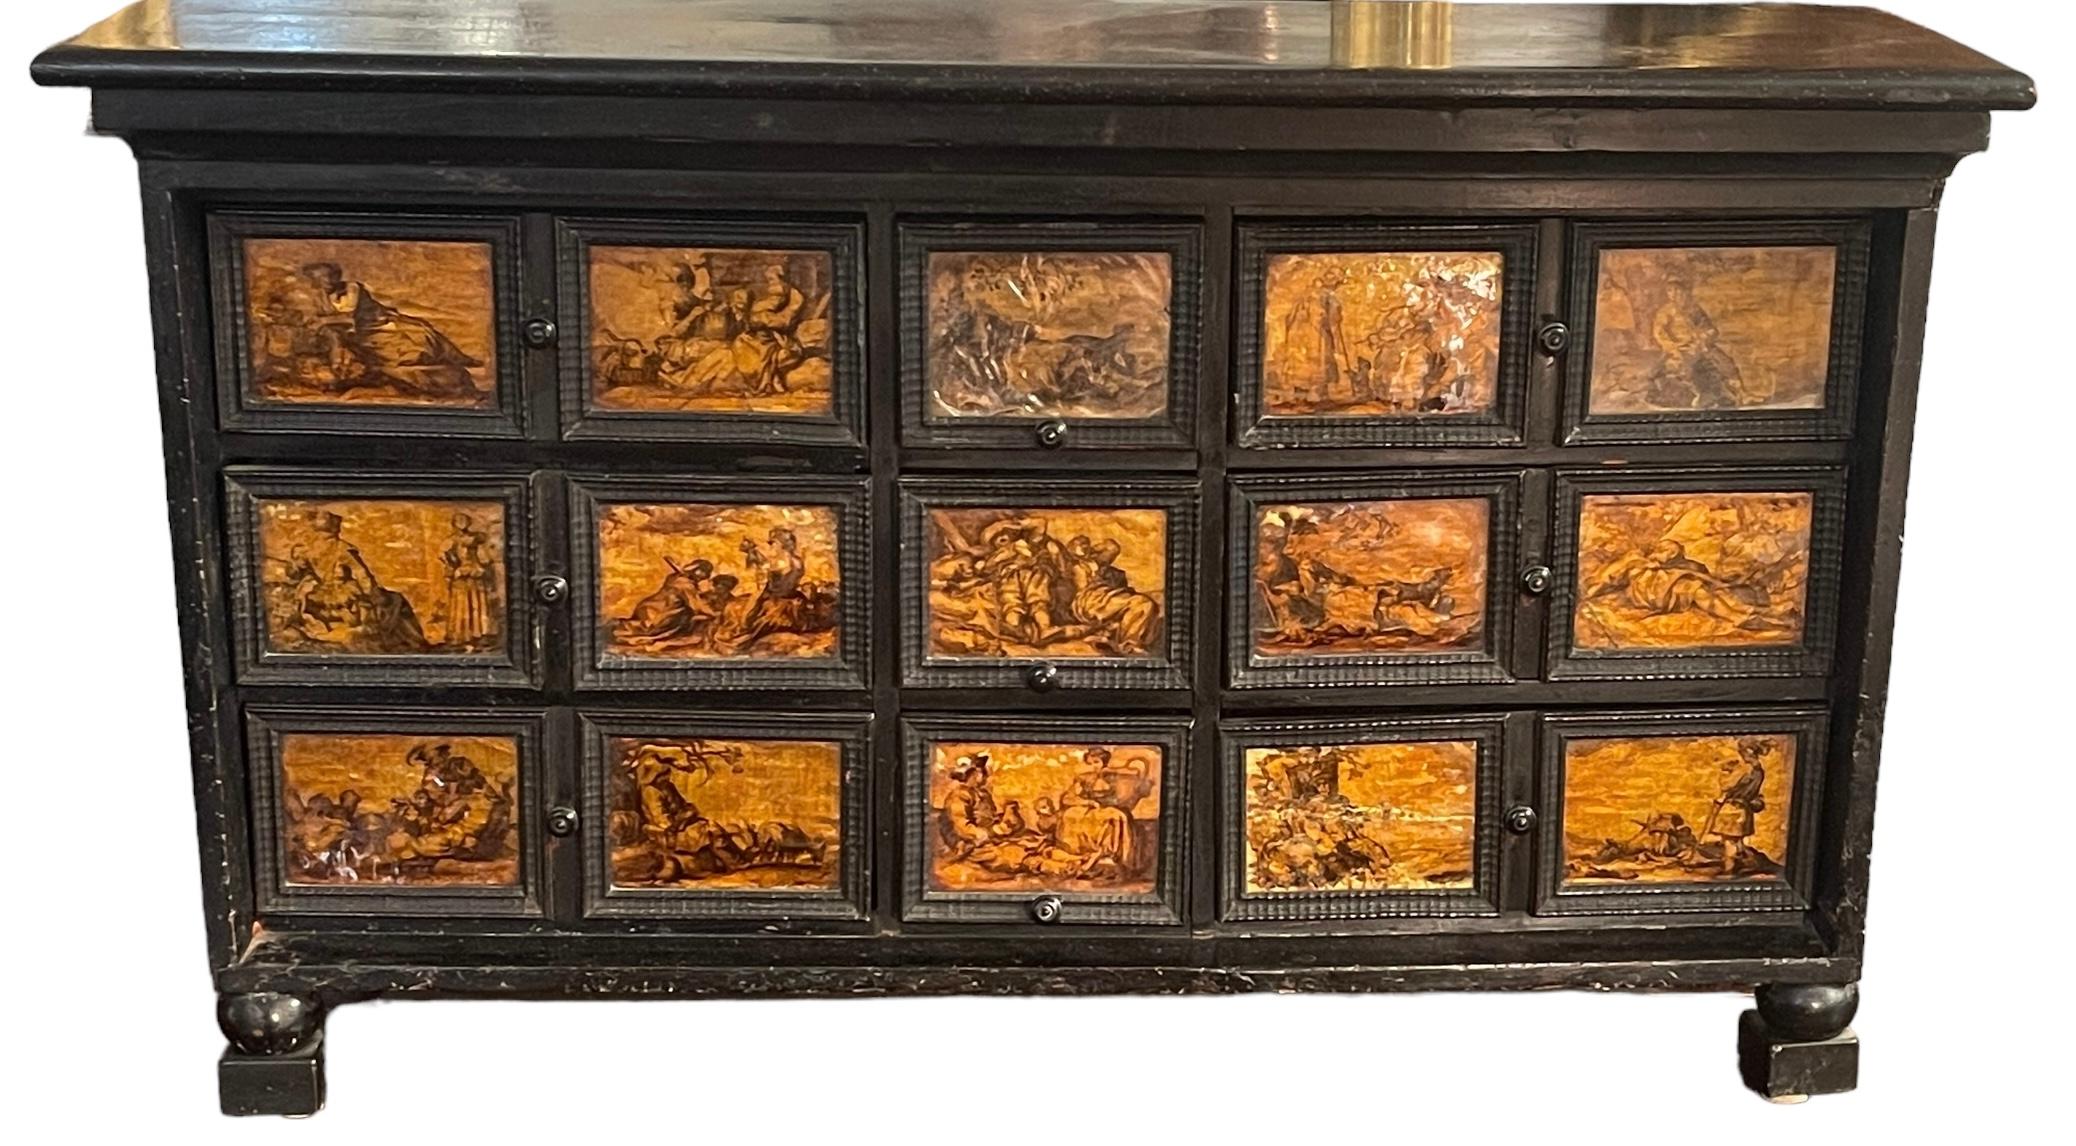 Antiker Münzschrank (Kabinett), 1600er Jahre, neapolitanisch.

Wertvolles und seltenes Möbelstück mit einer Struktur aus Ebenholz, 9 Schubladen und 15 Kacheln auf einer Silberplatte, einer Schellackschicht und Tuschezeichnungen, die Szenen aus dem